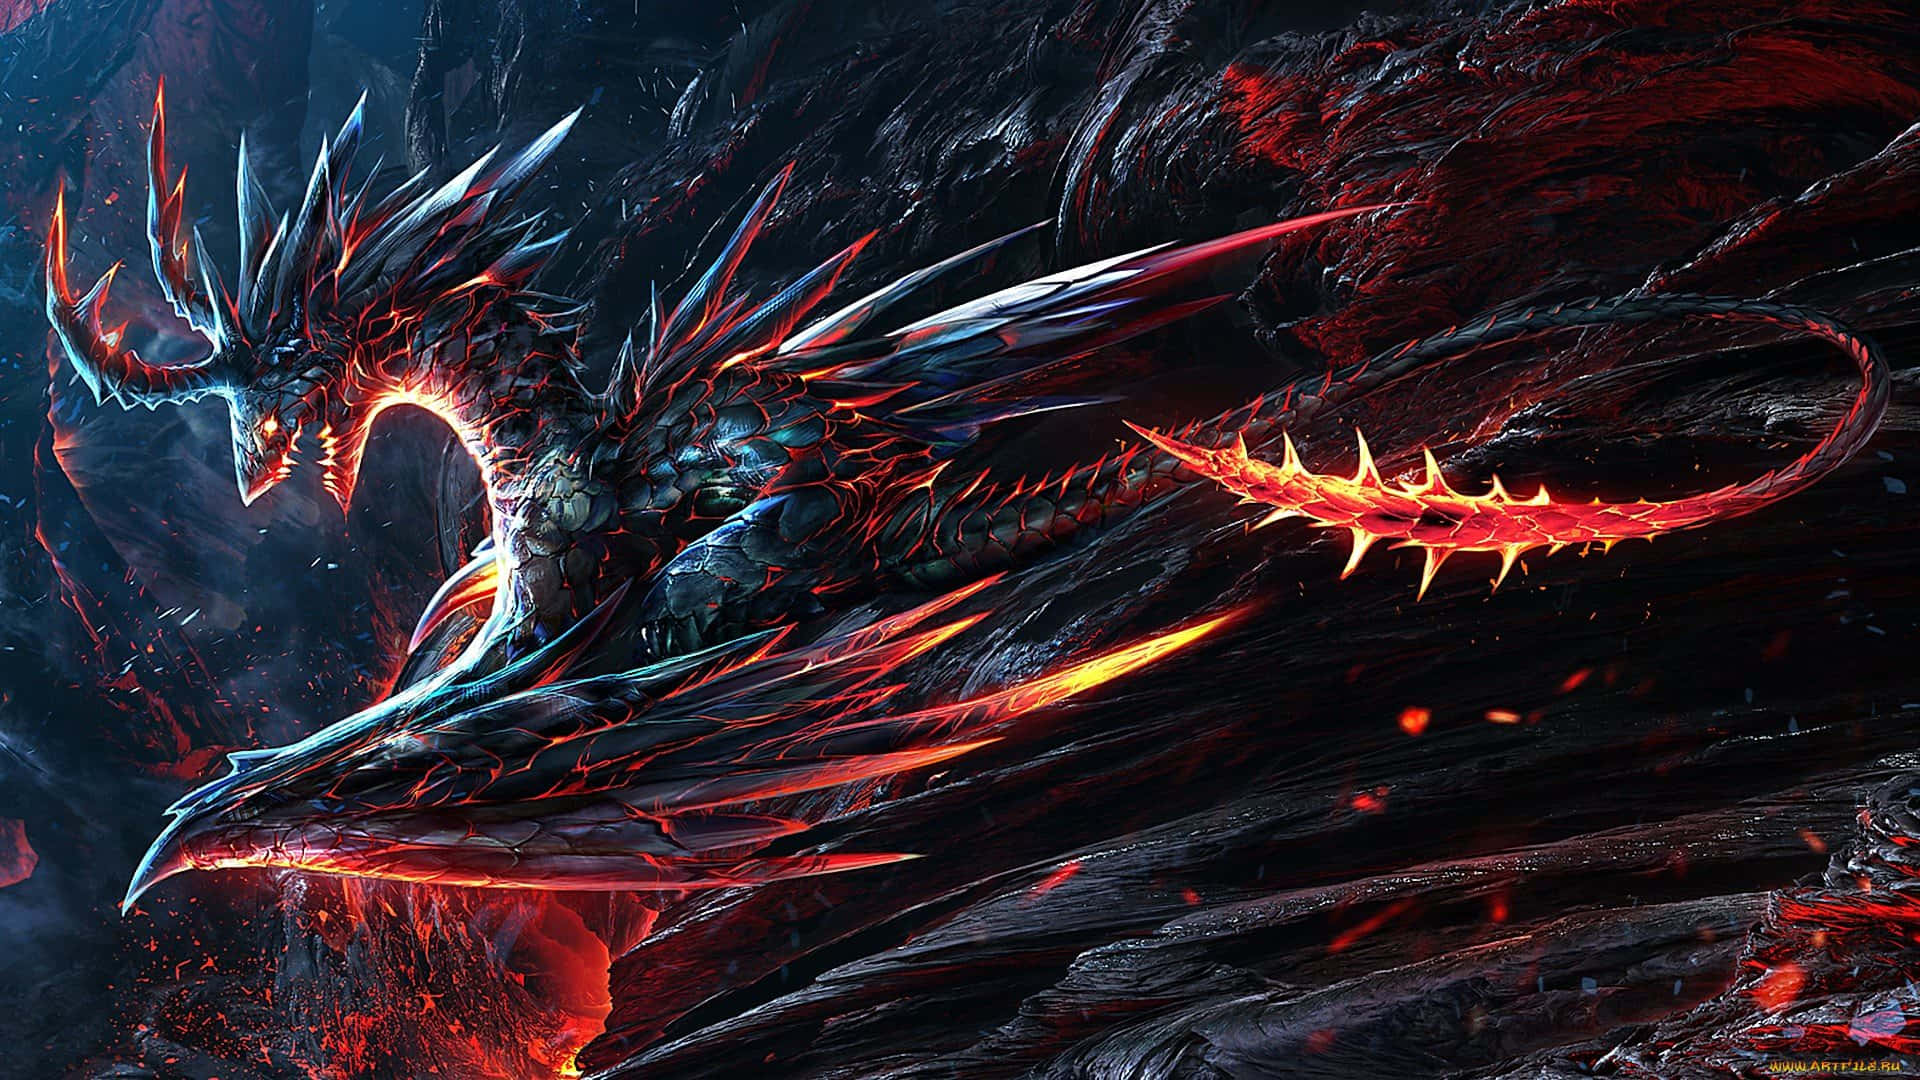 1080p Dragon Fantasy Retro-style Video Game Wallpaper